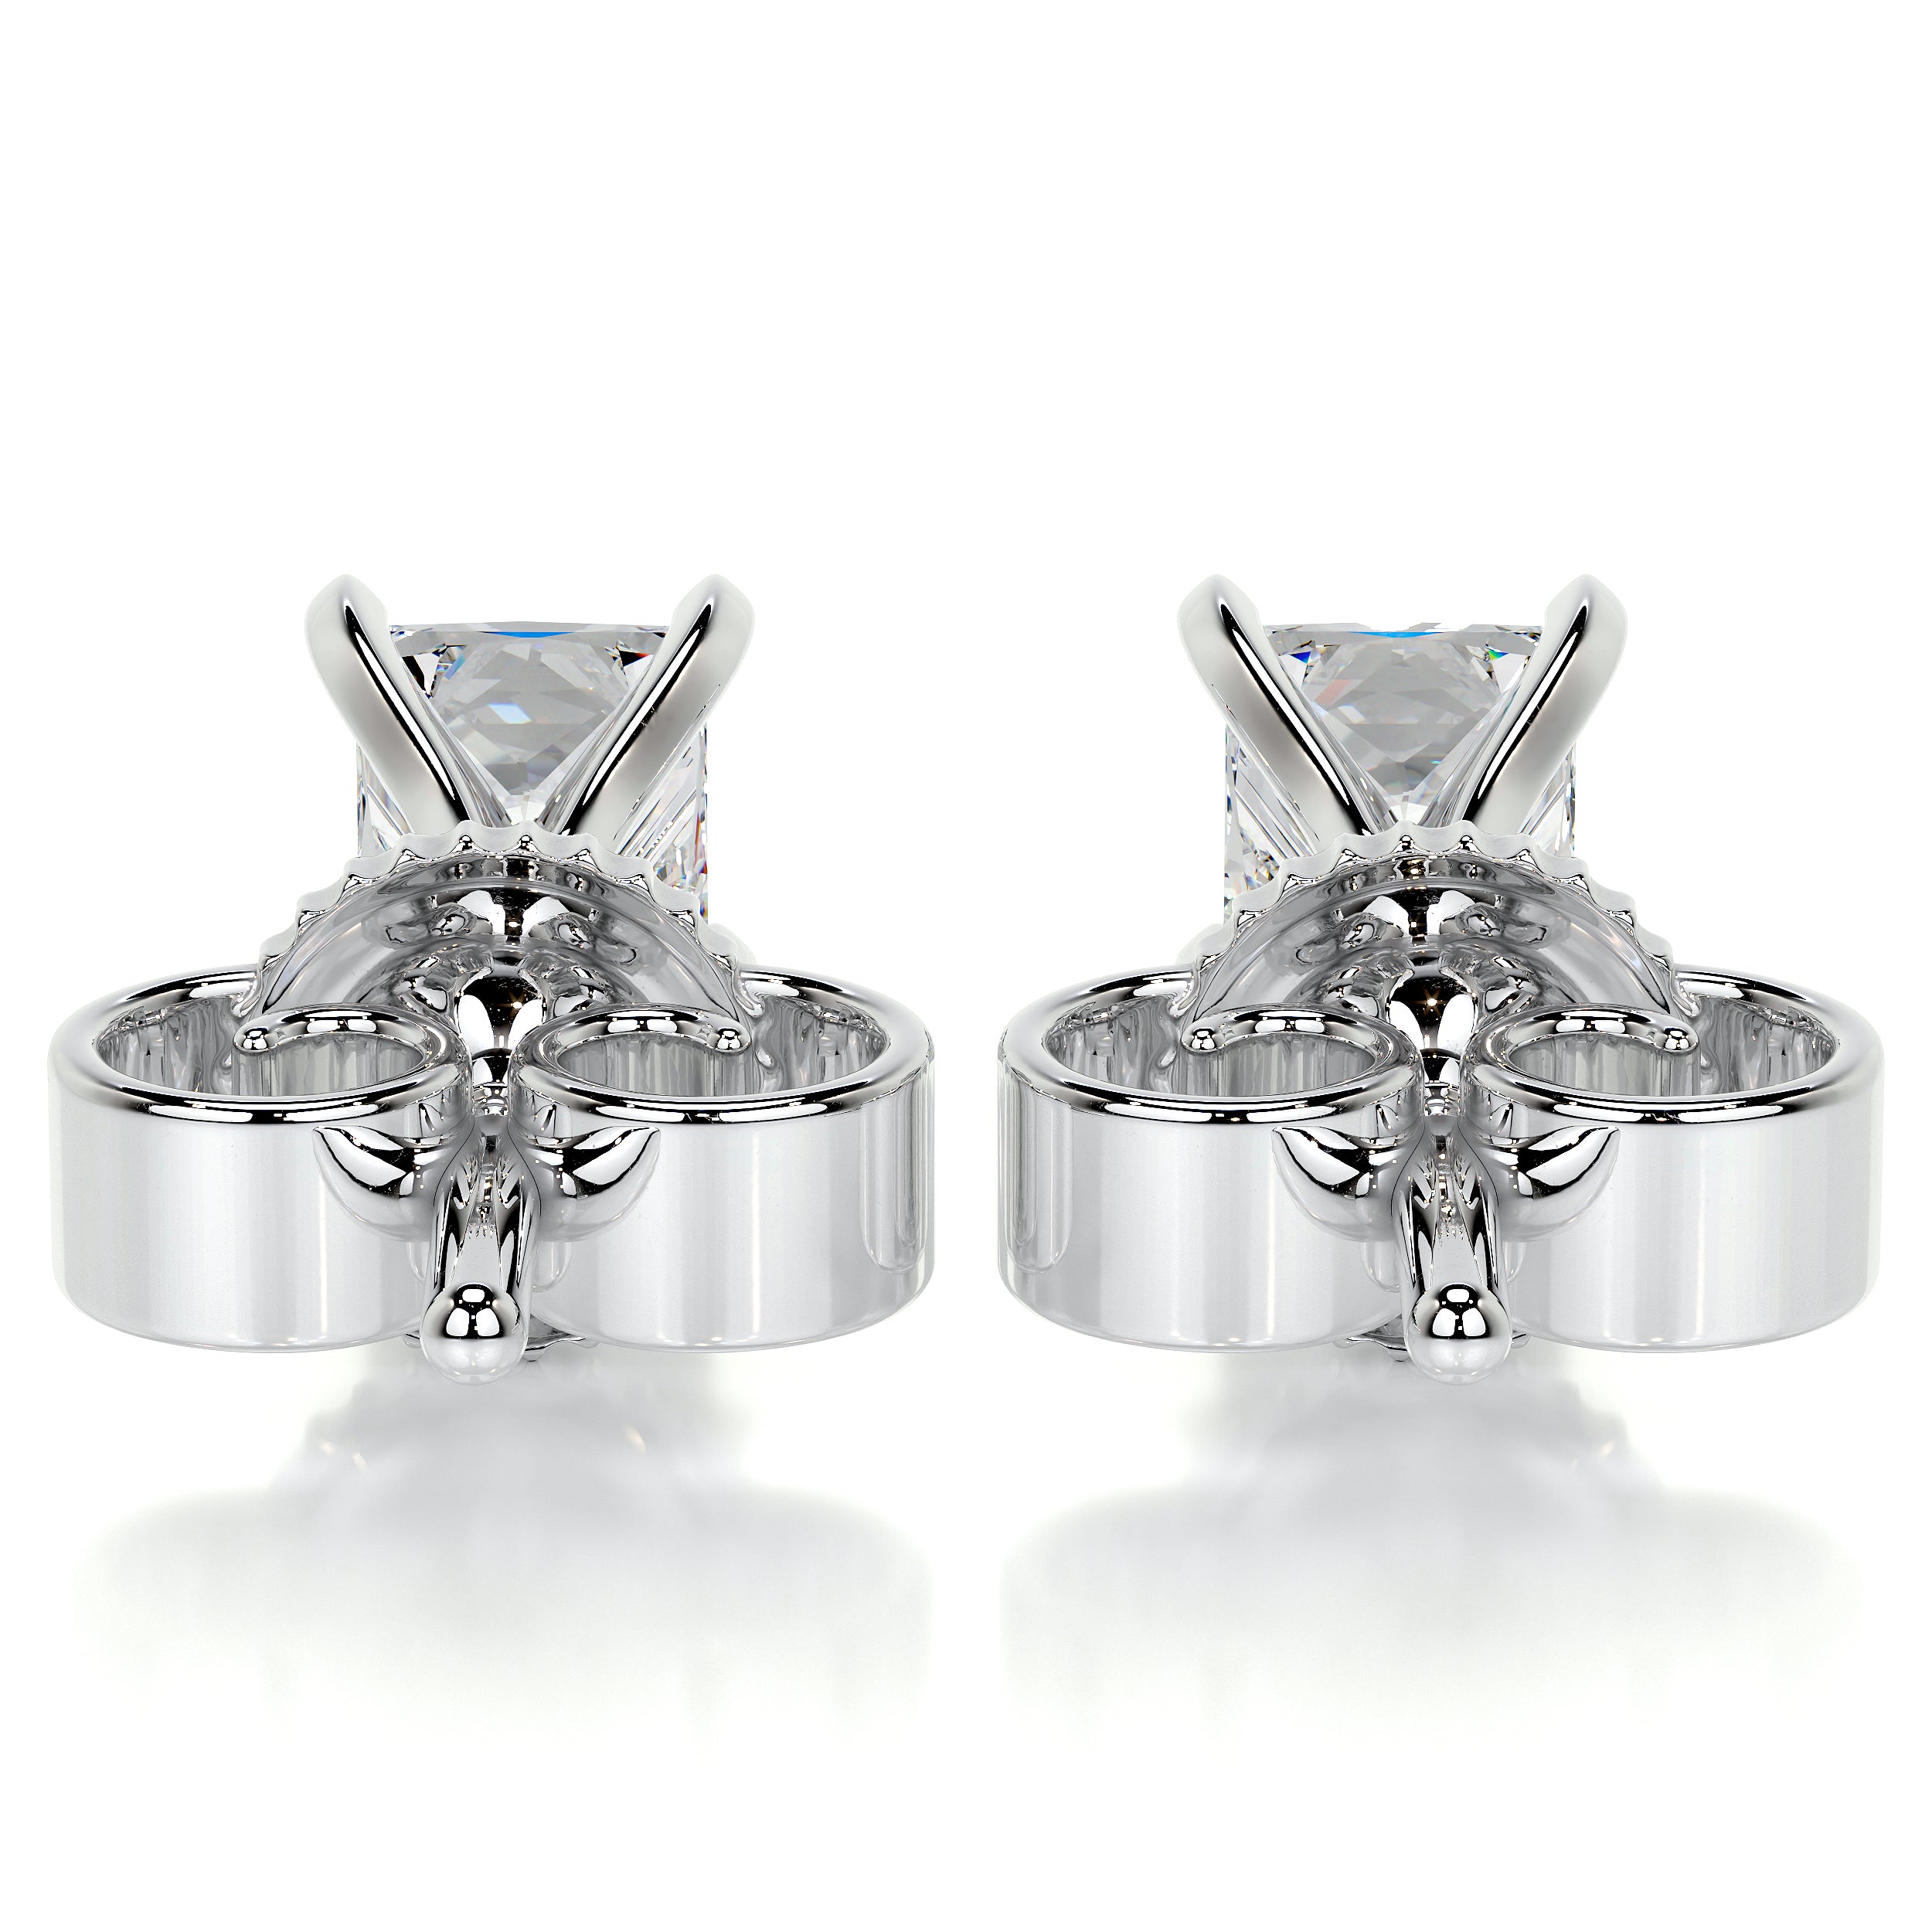 Magnolia Diamond Earrings -14K White Gold